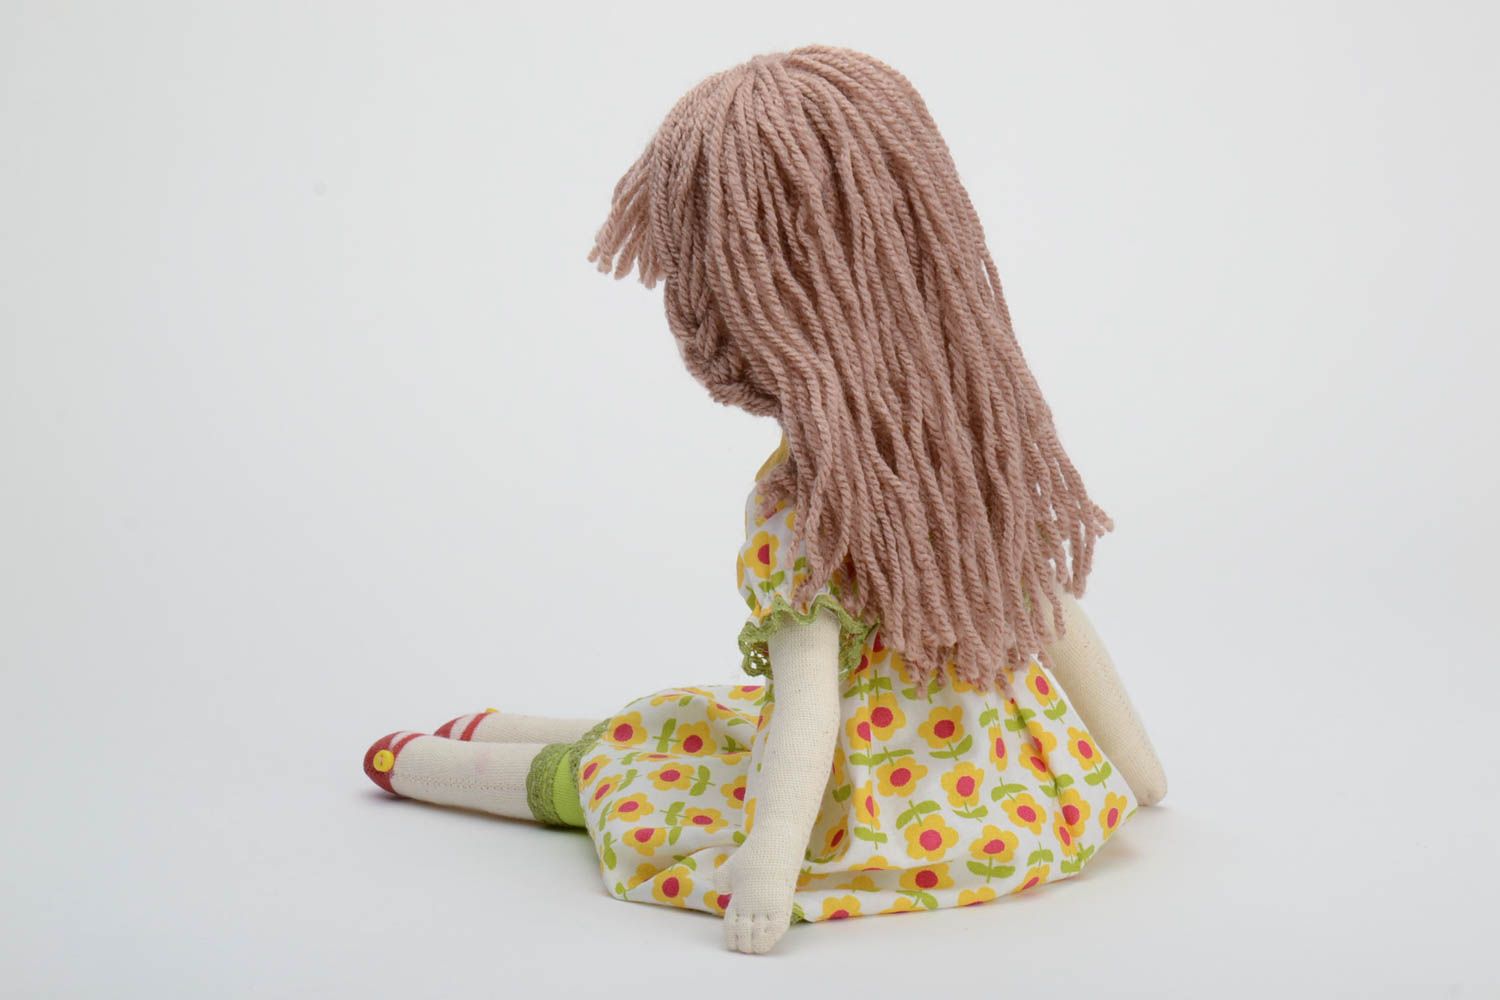 Авторская кукла из хлопка мягкая ручной работы Девочка в красивом платье фото 4